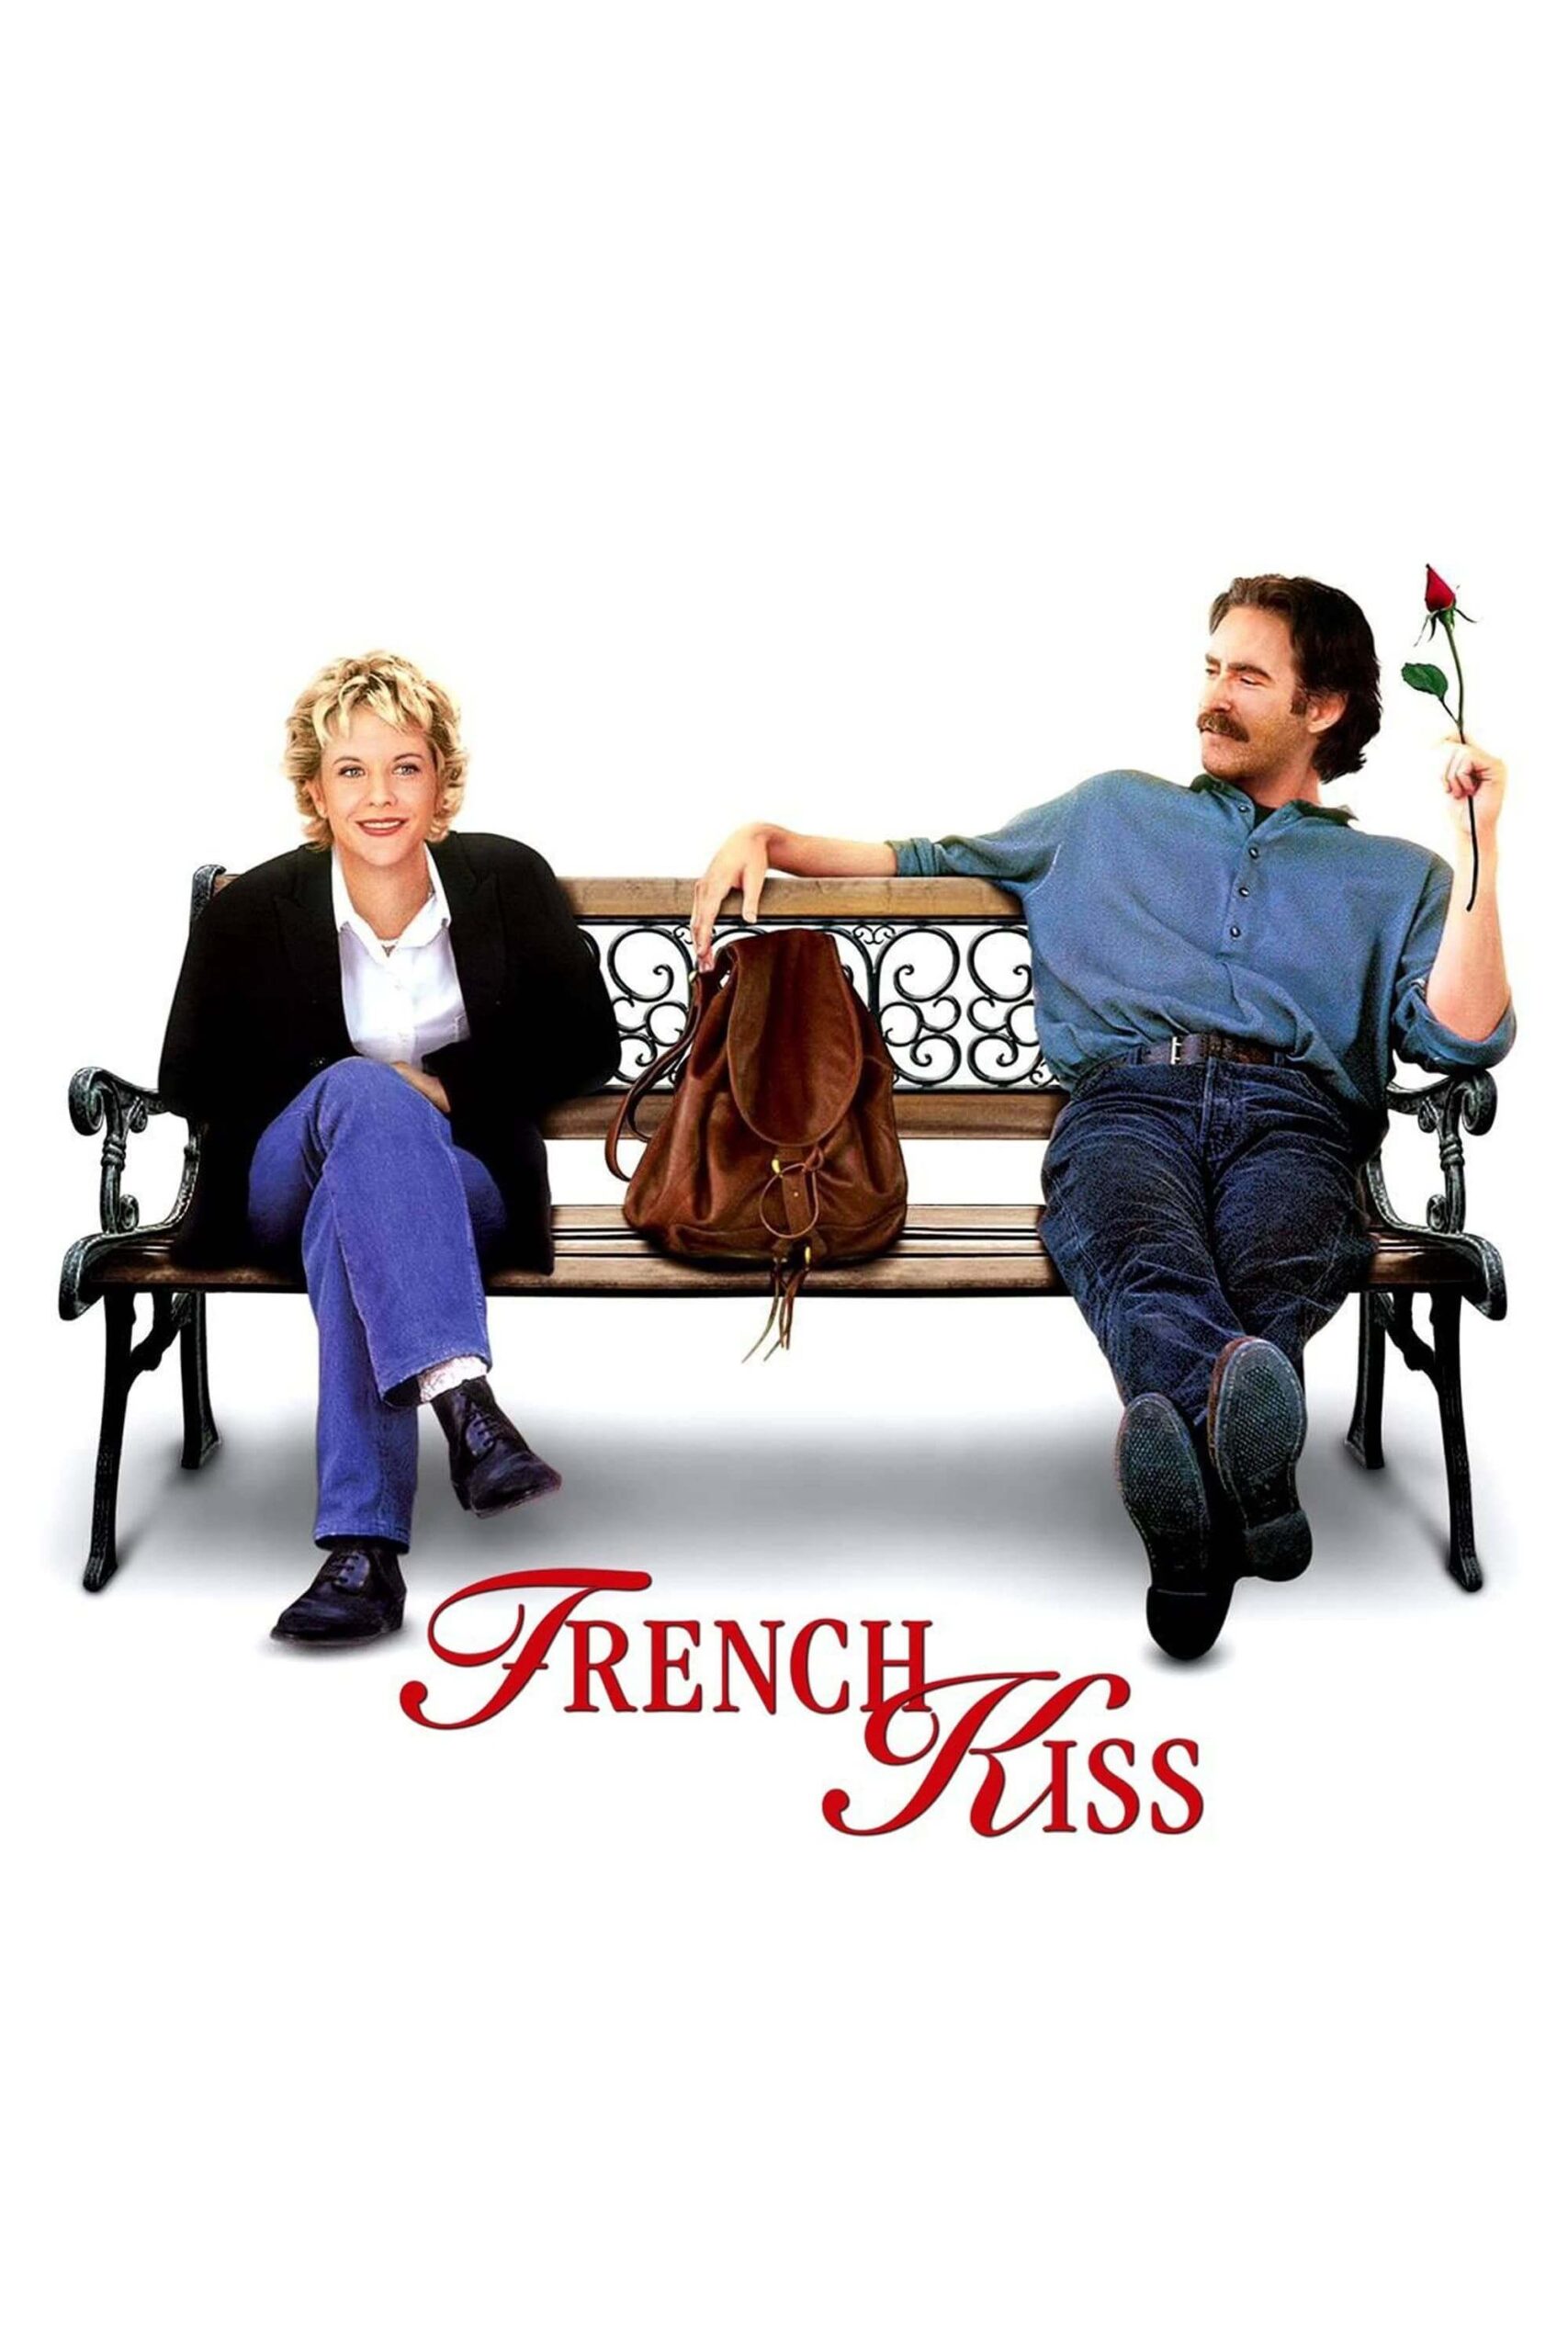 بوسه فرانسوی (French Kiss)